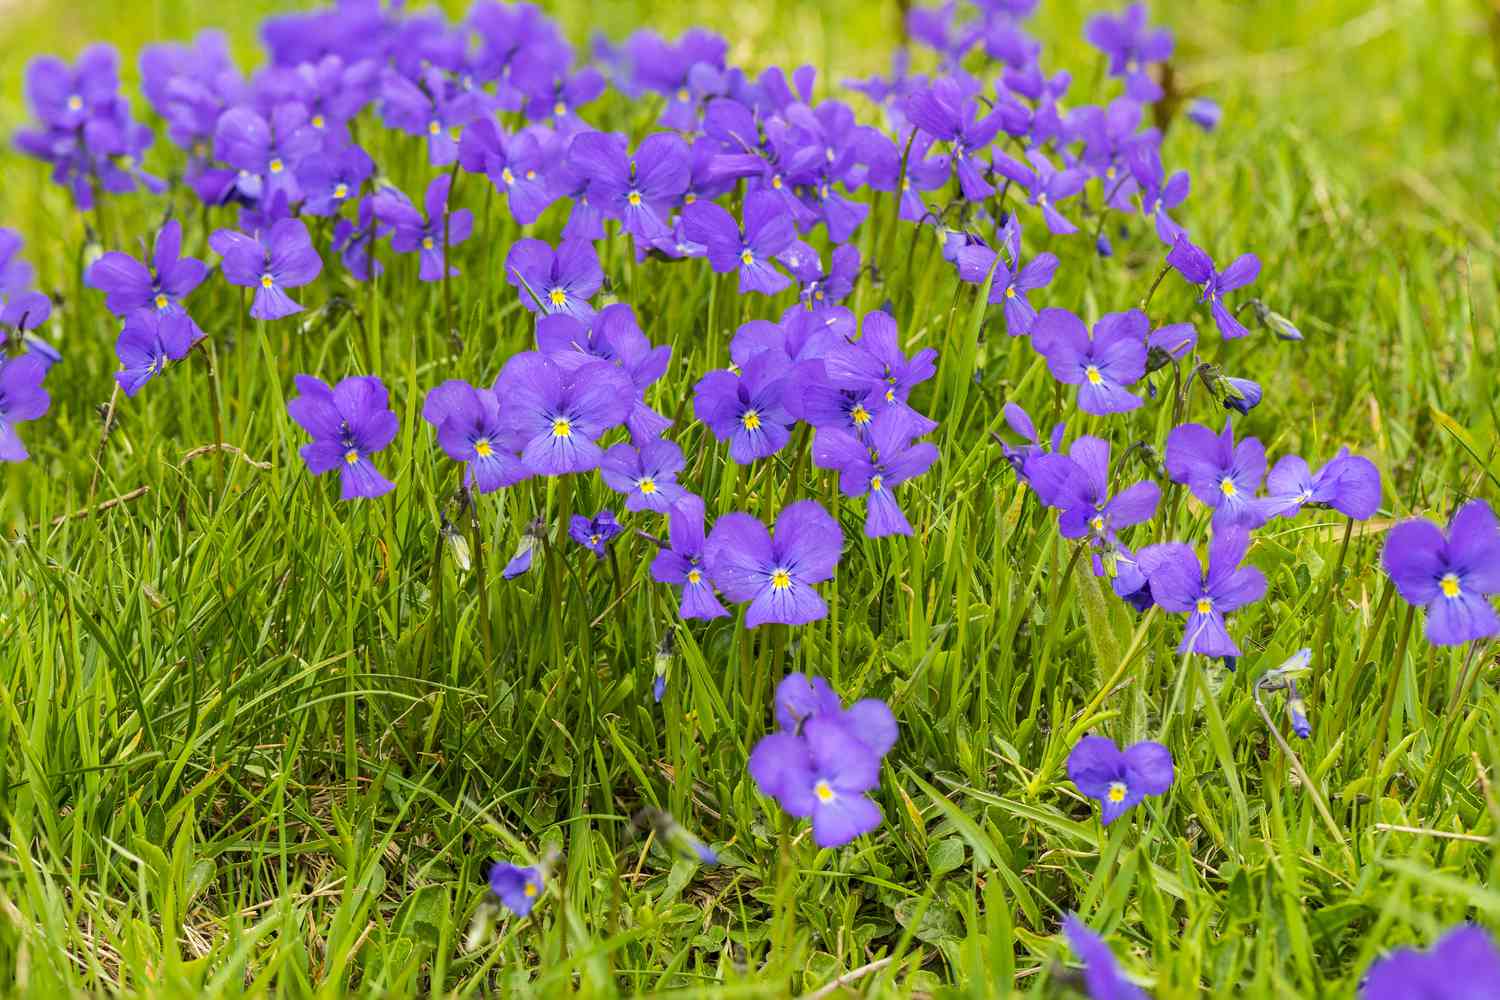 Flores violetas moradas creciendo silvestres en la hierba.